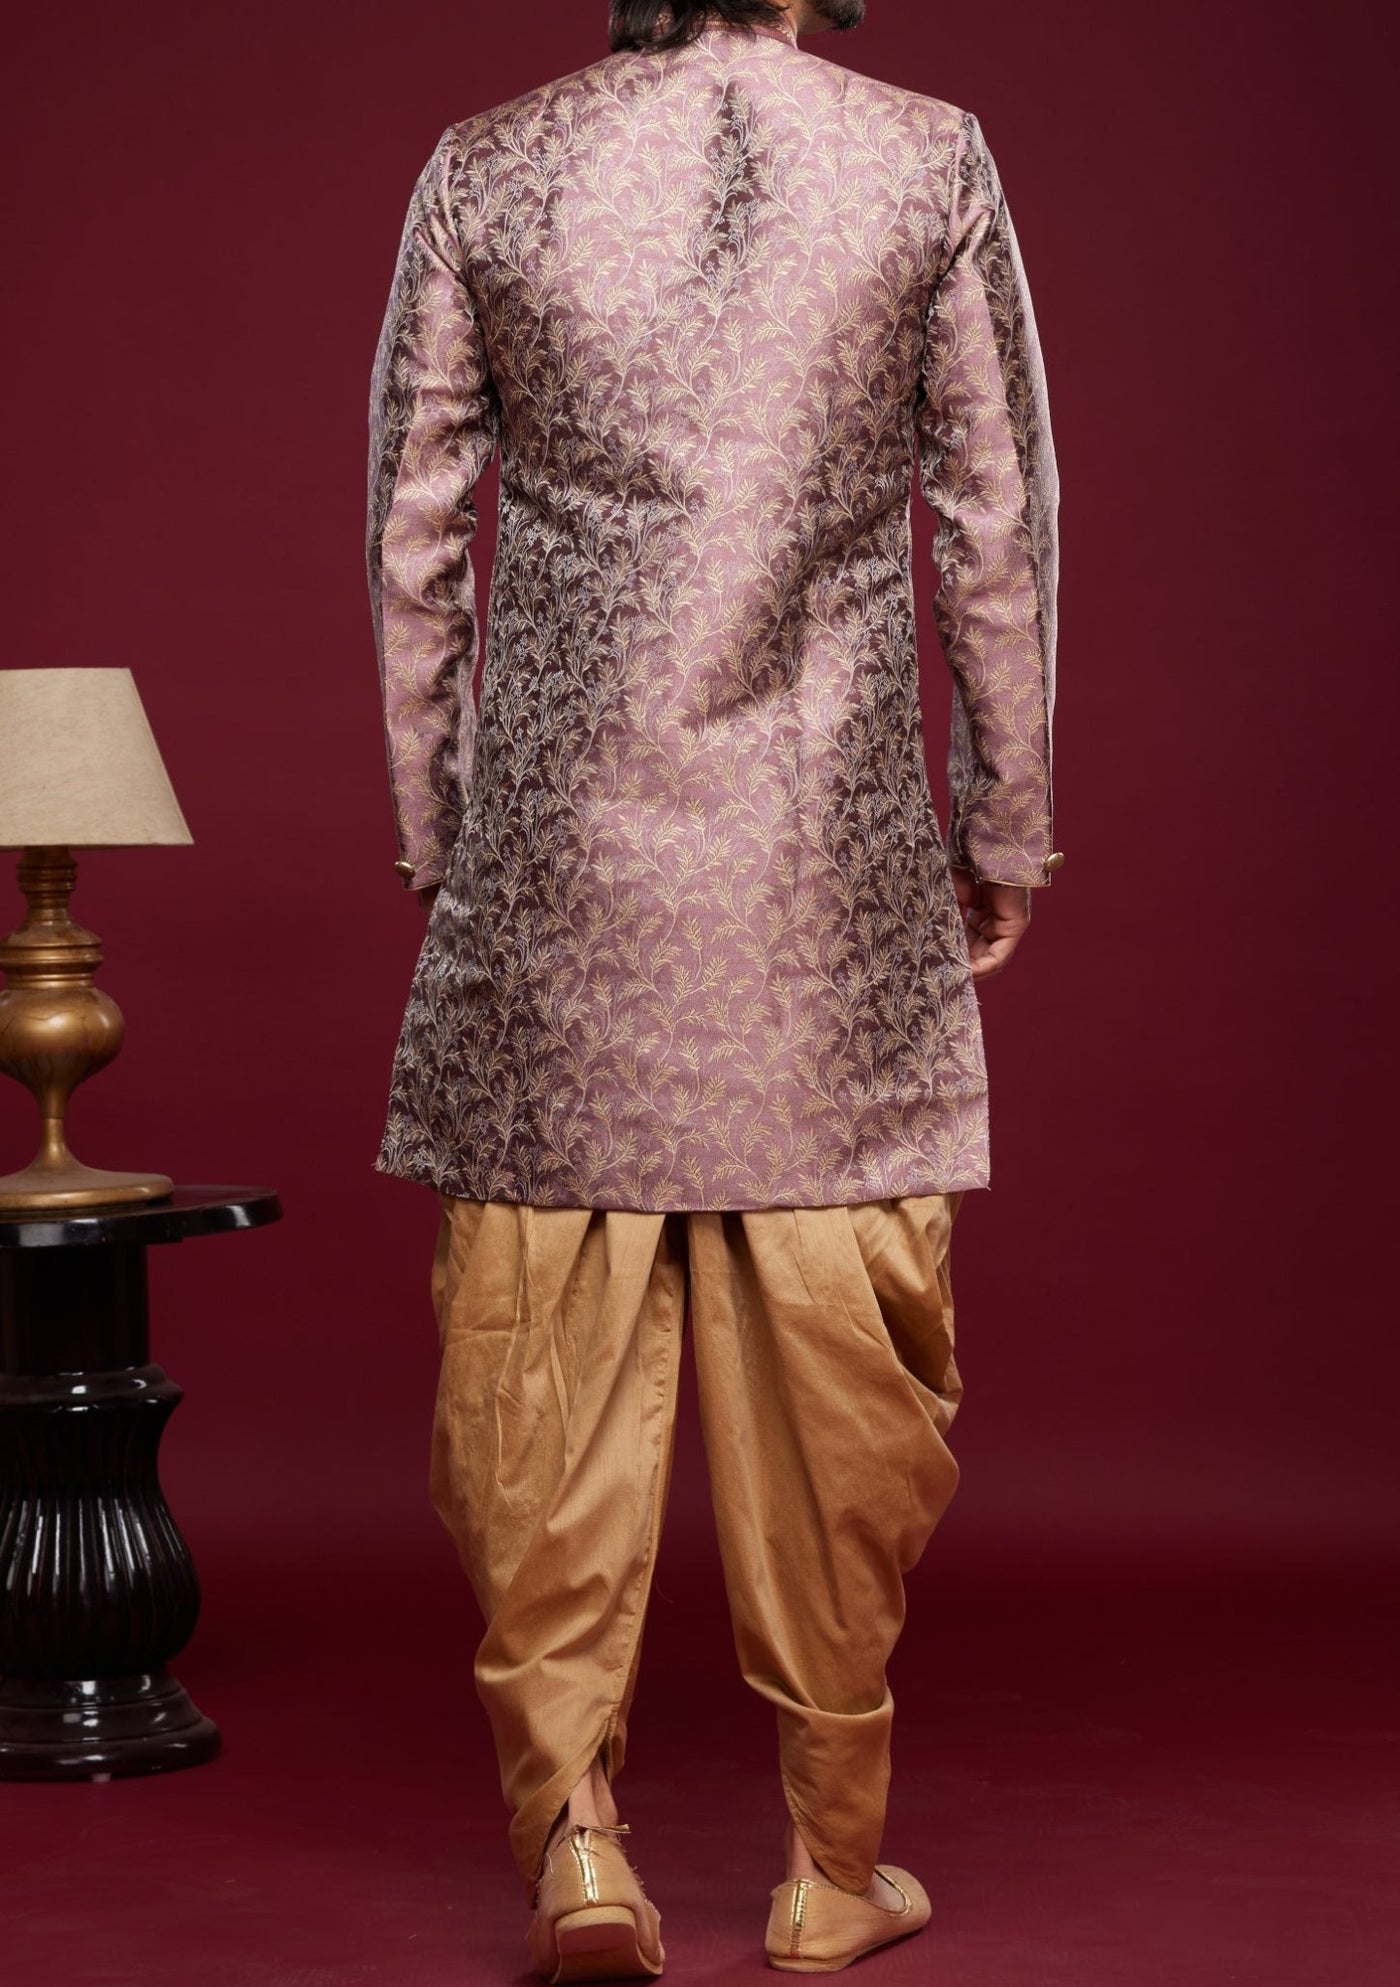 Men's Semi Indo Western Party Wear Sherwani Suit - db25768